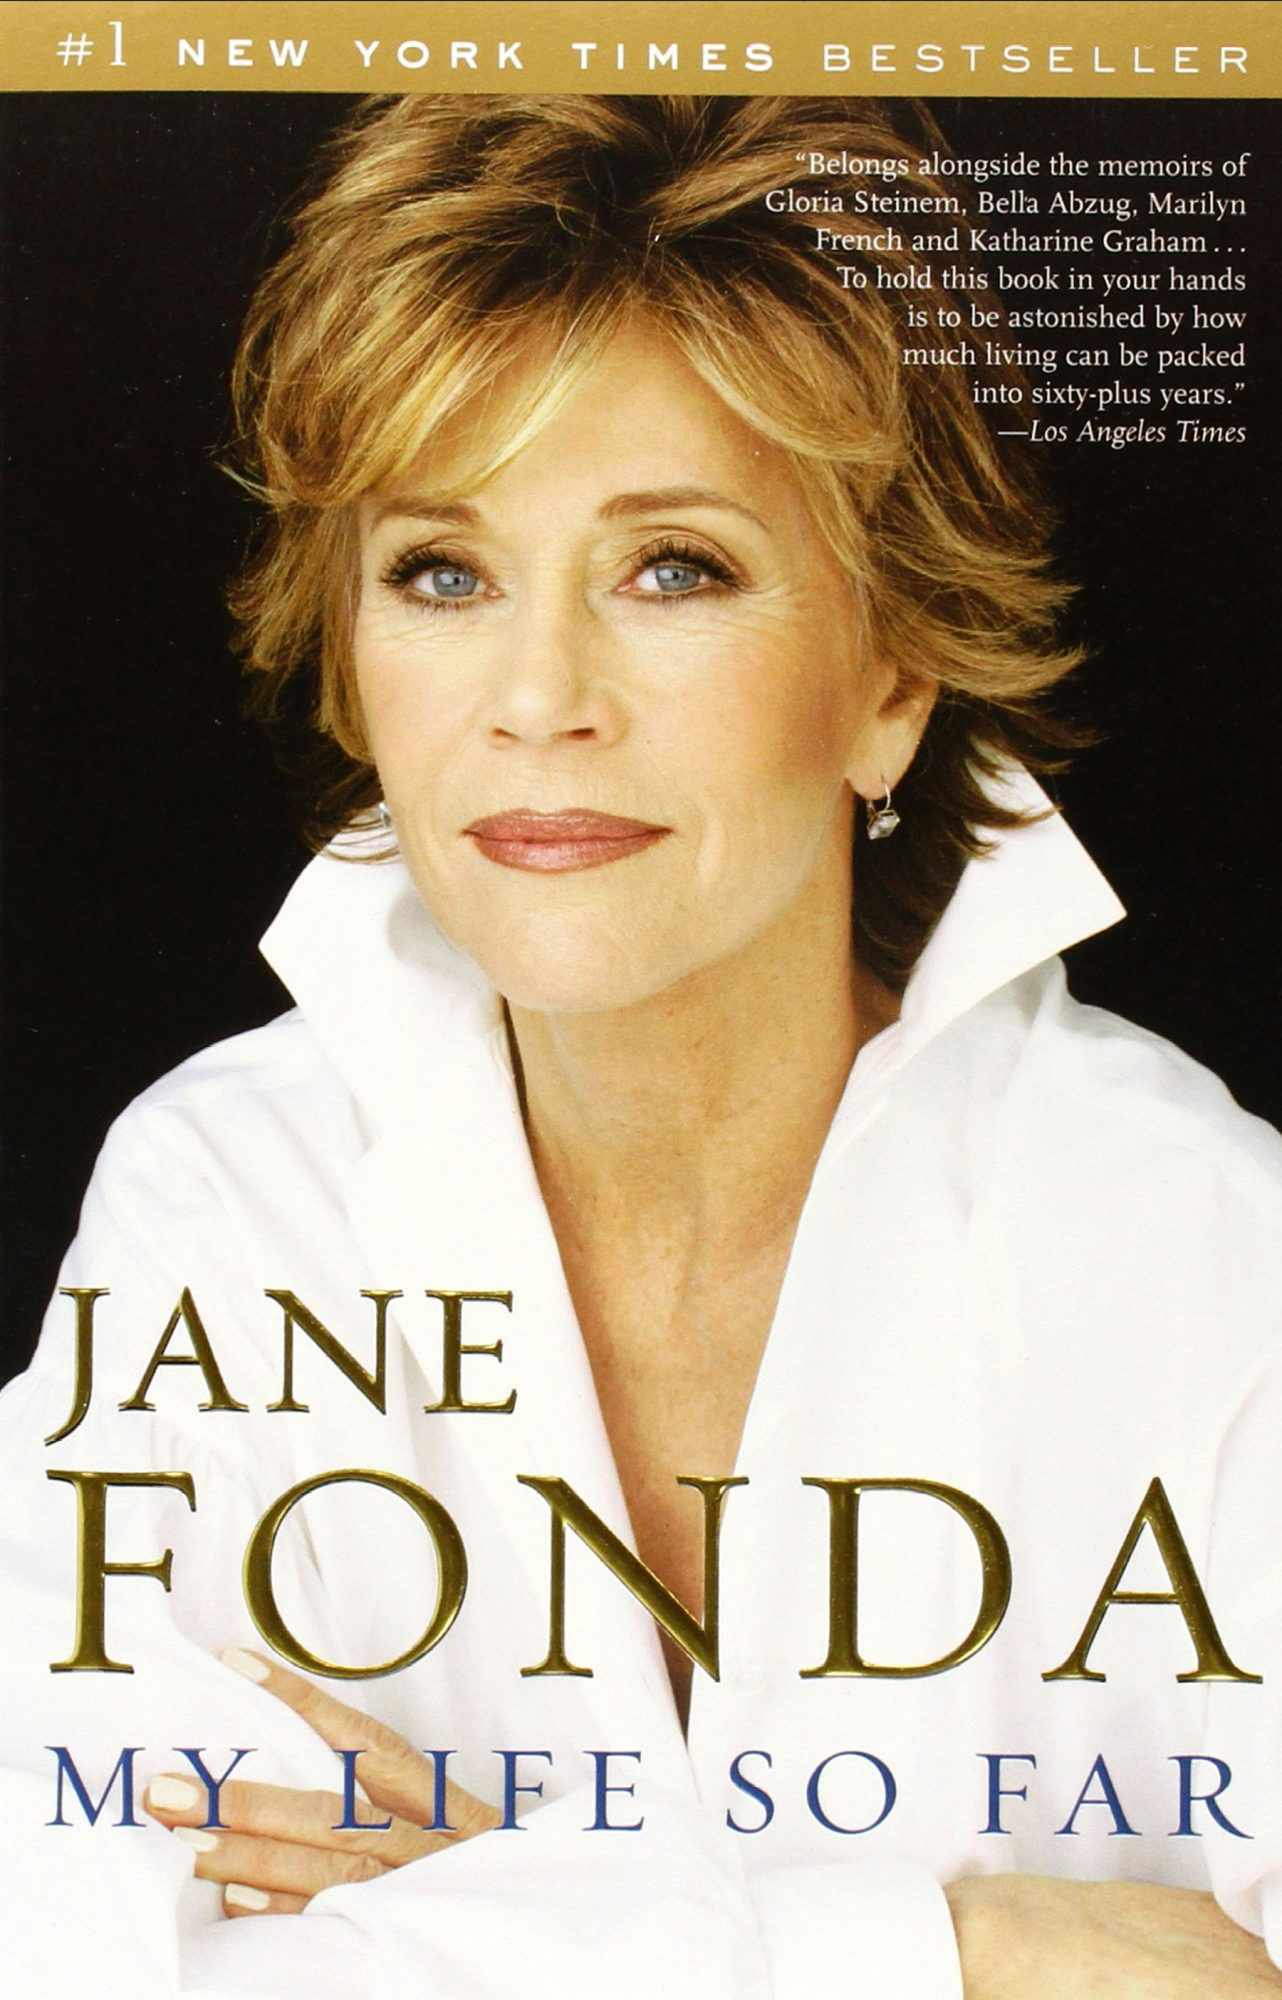 16. Jane Fonda, My Life So Far